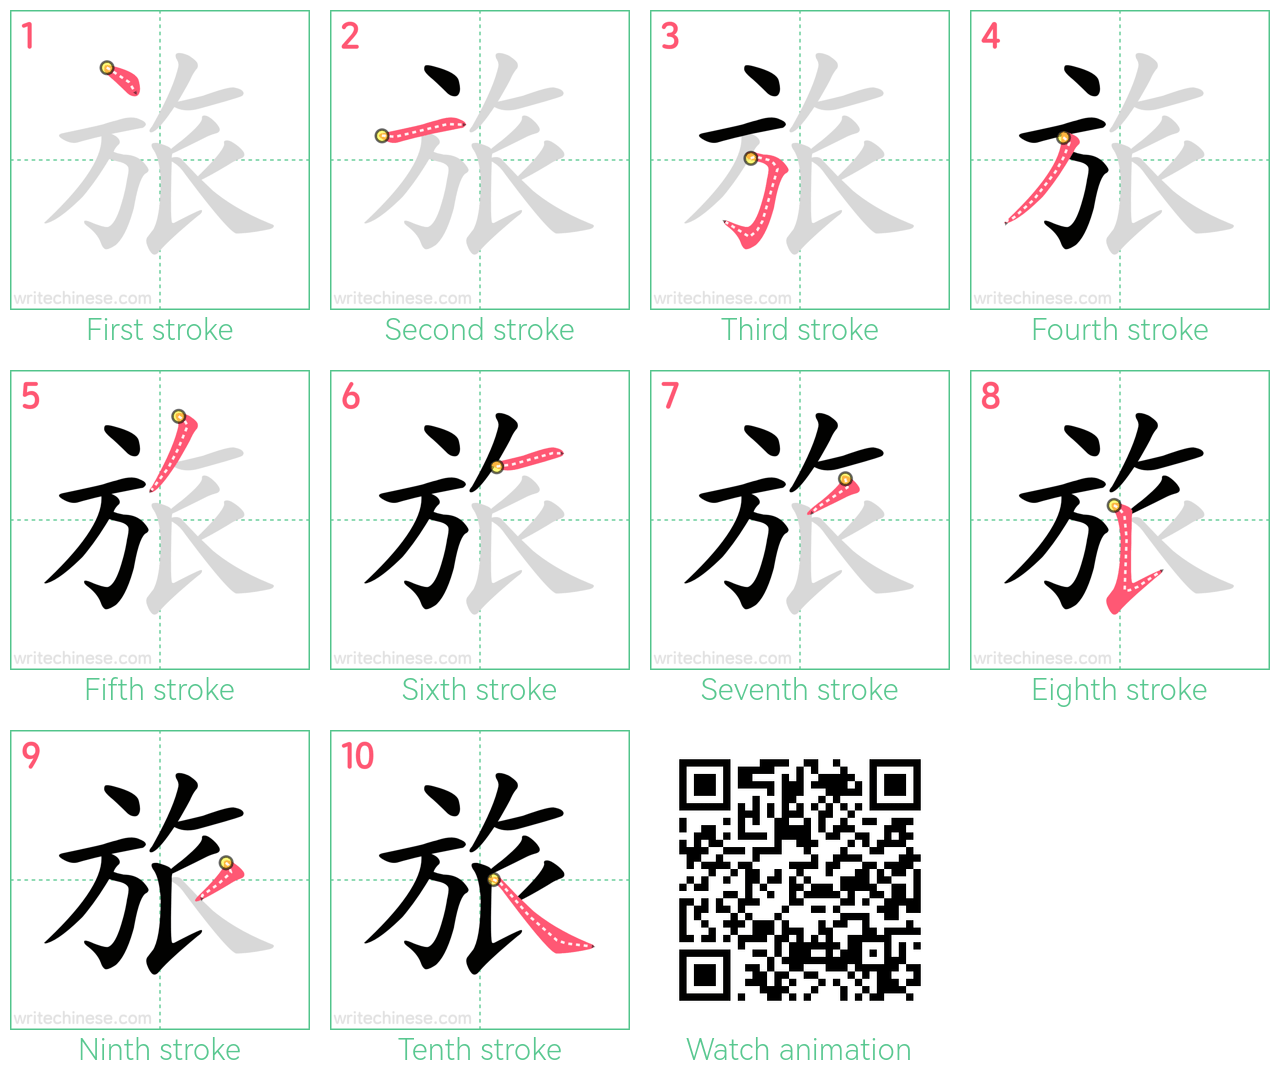 旅 step-by-step stroke order diagrams